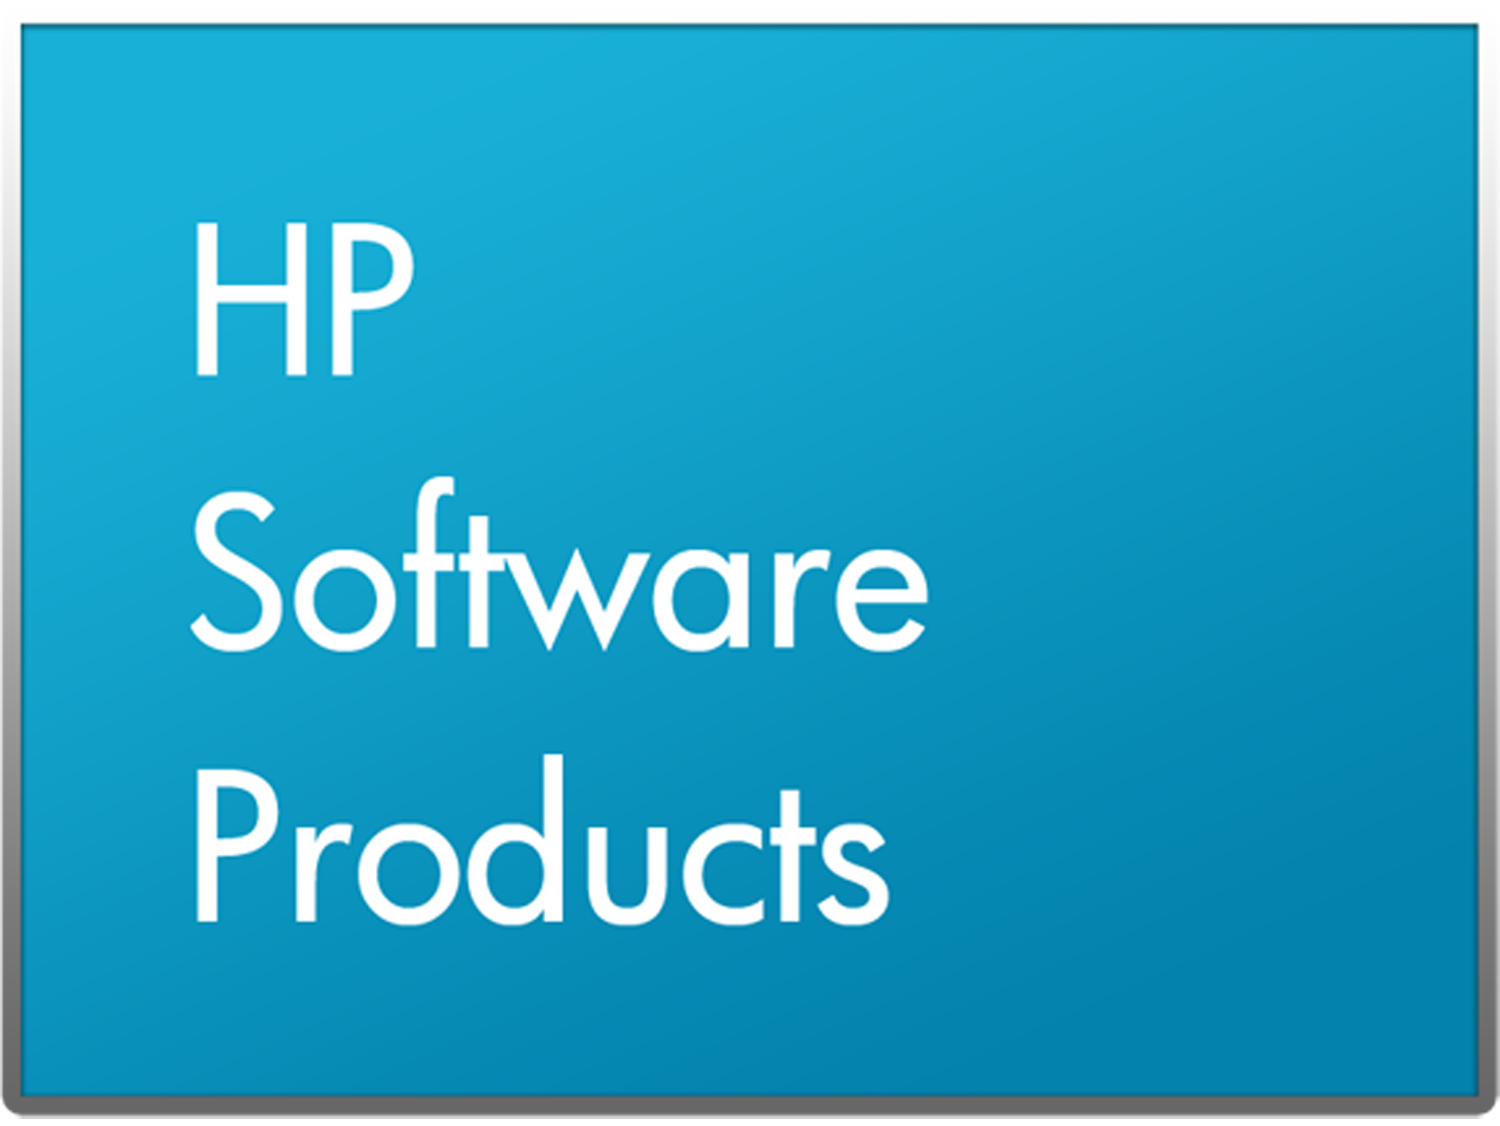 HP Digital Sending Software